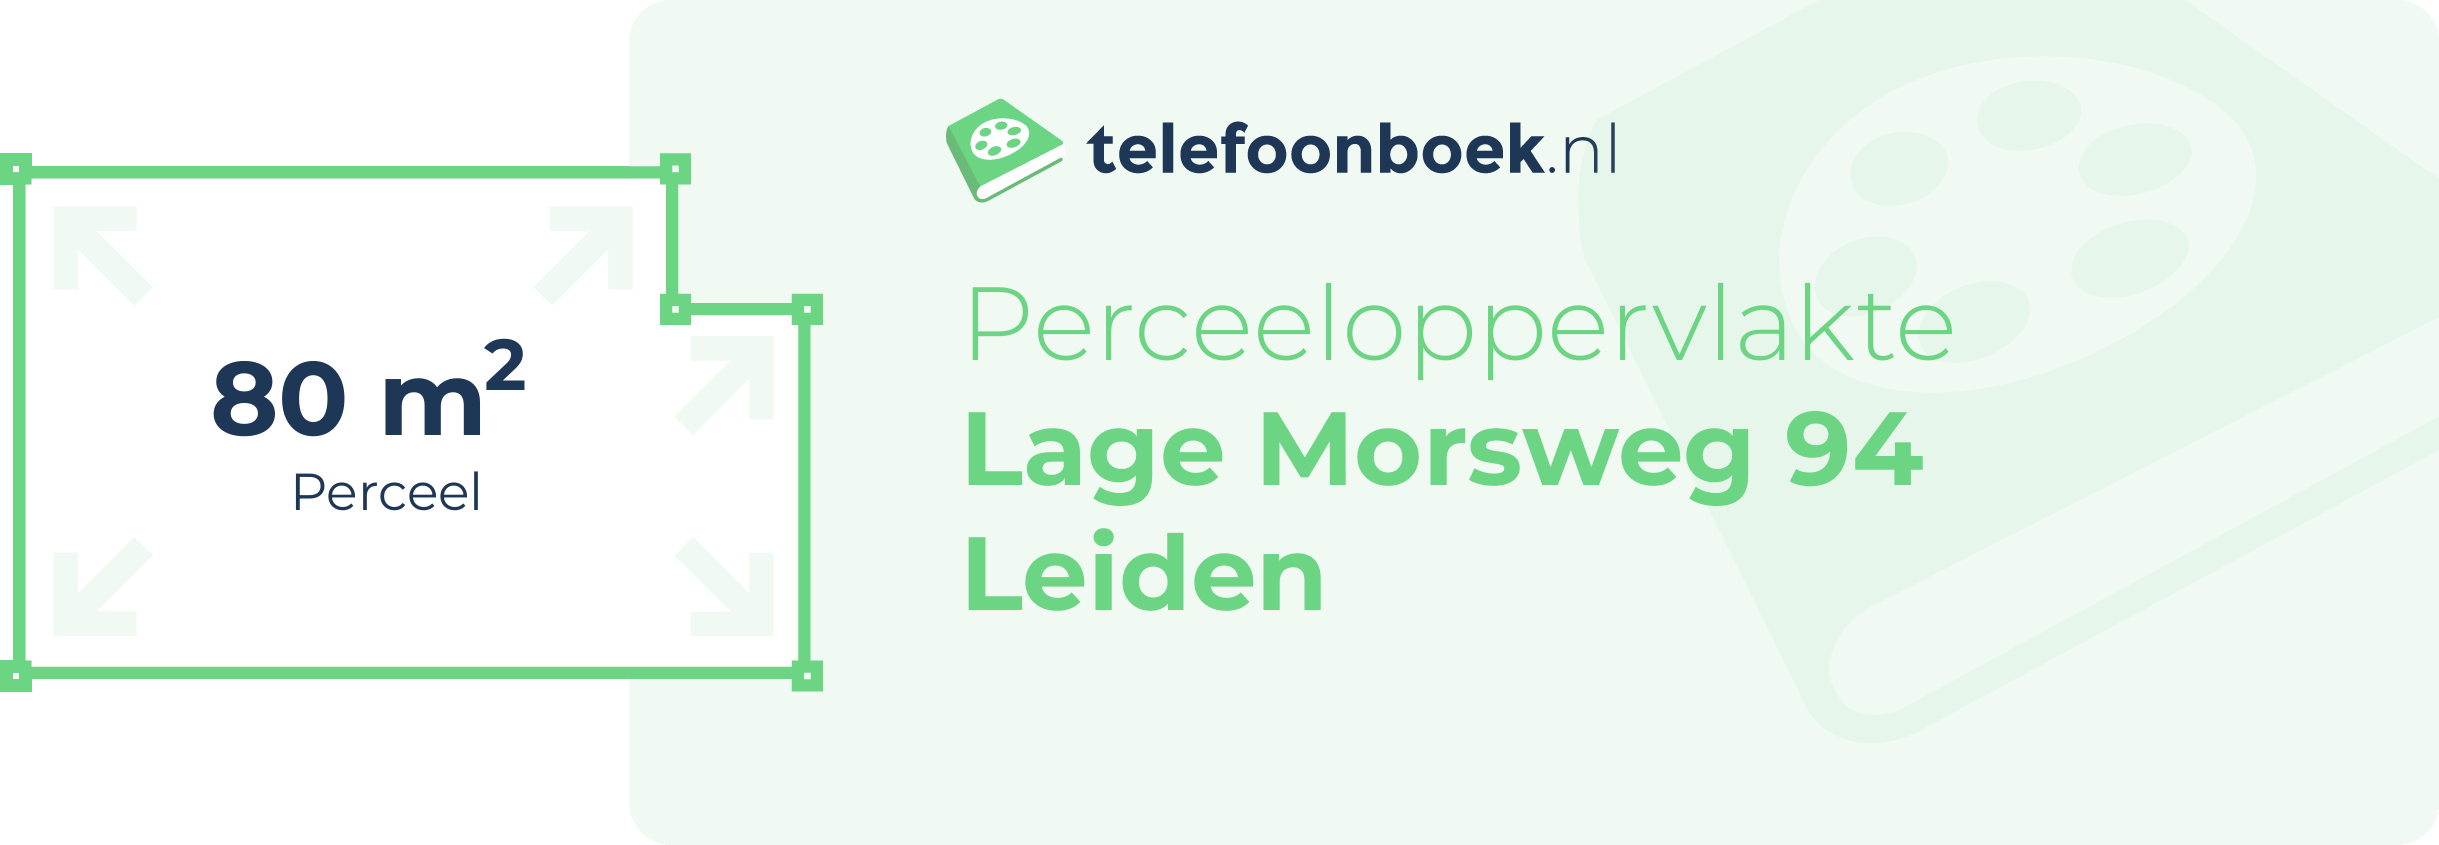 Perceeloppervlakte Lage Morsweg 94 Leiden